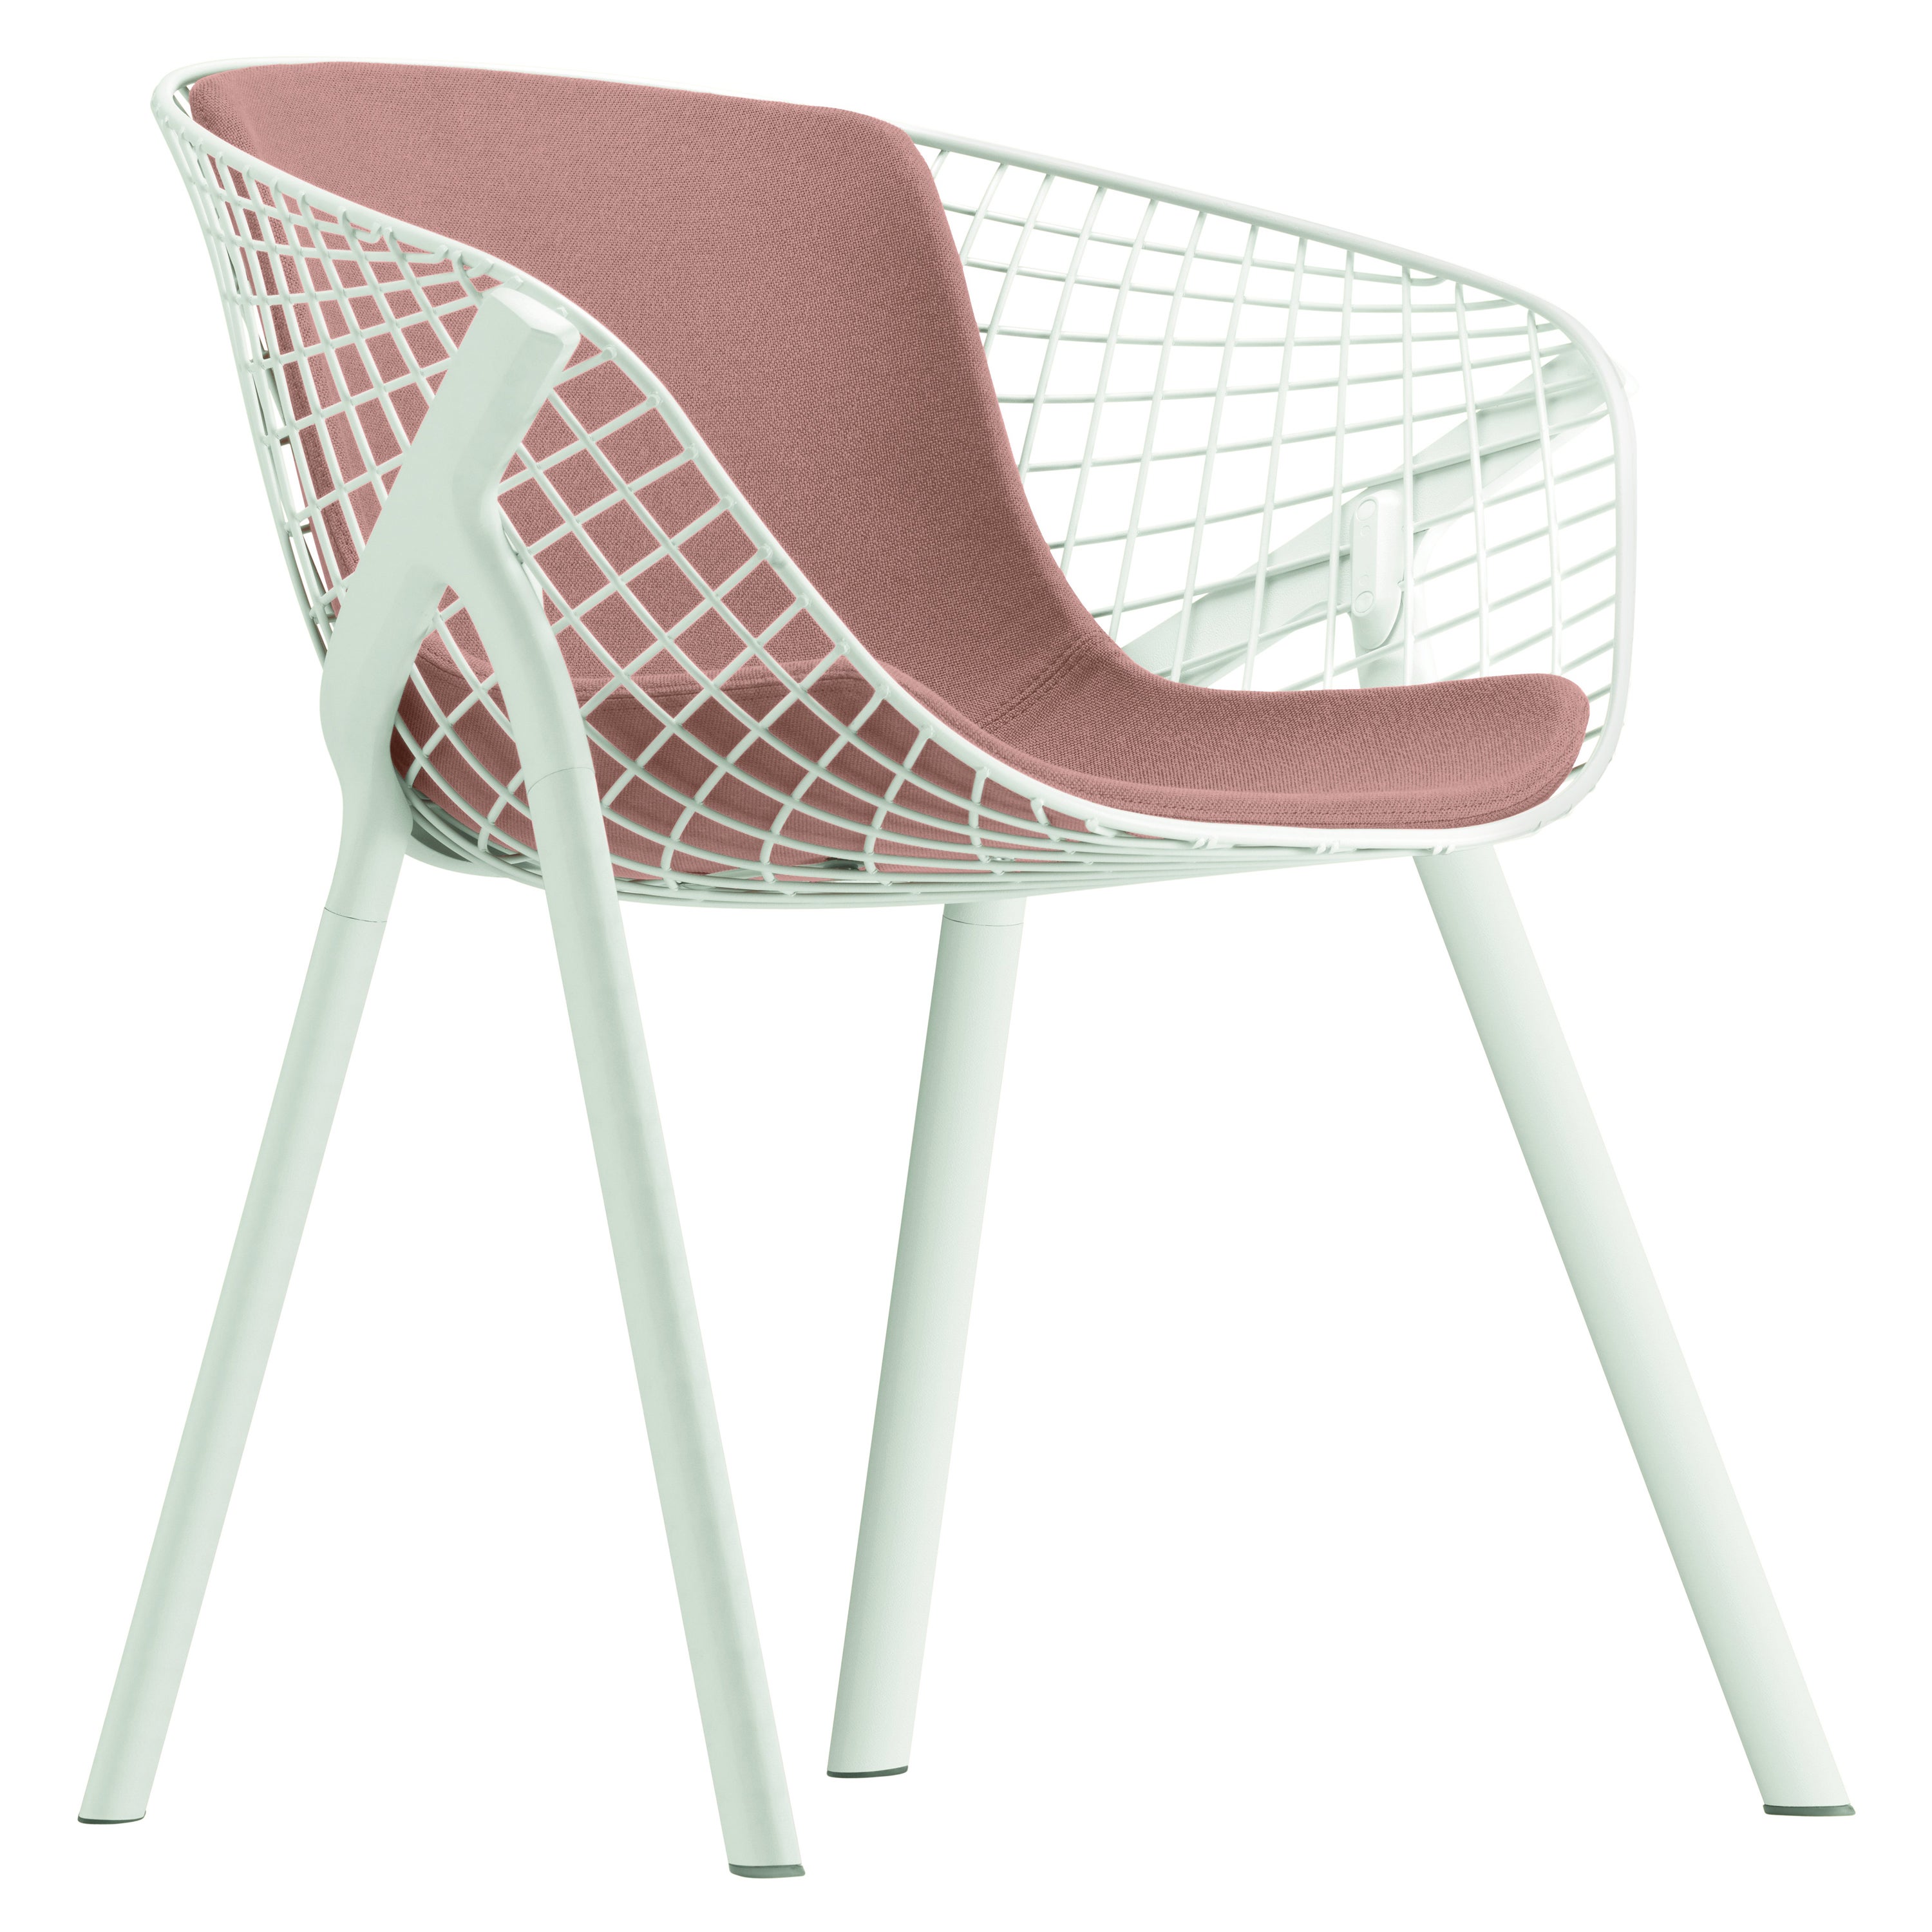 Alias 040 Kobi Chair with Medium Pad in Cream & White Lacquered Aluminum Frame